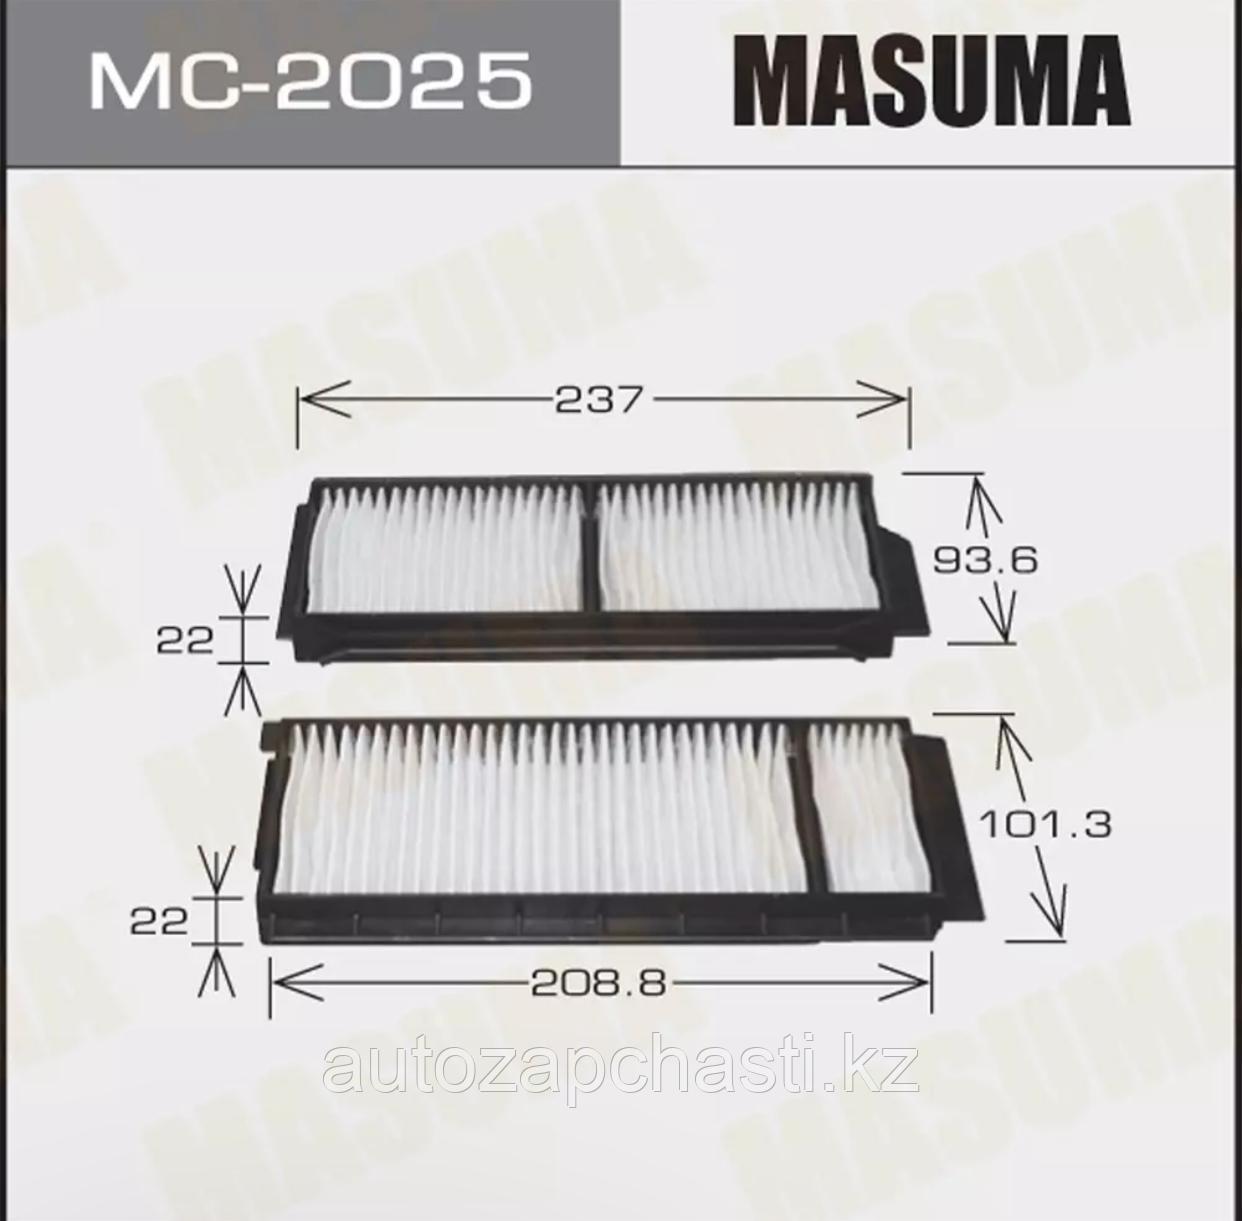 MASUMA Салонный фильтр для Nissan и Mazda